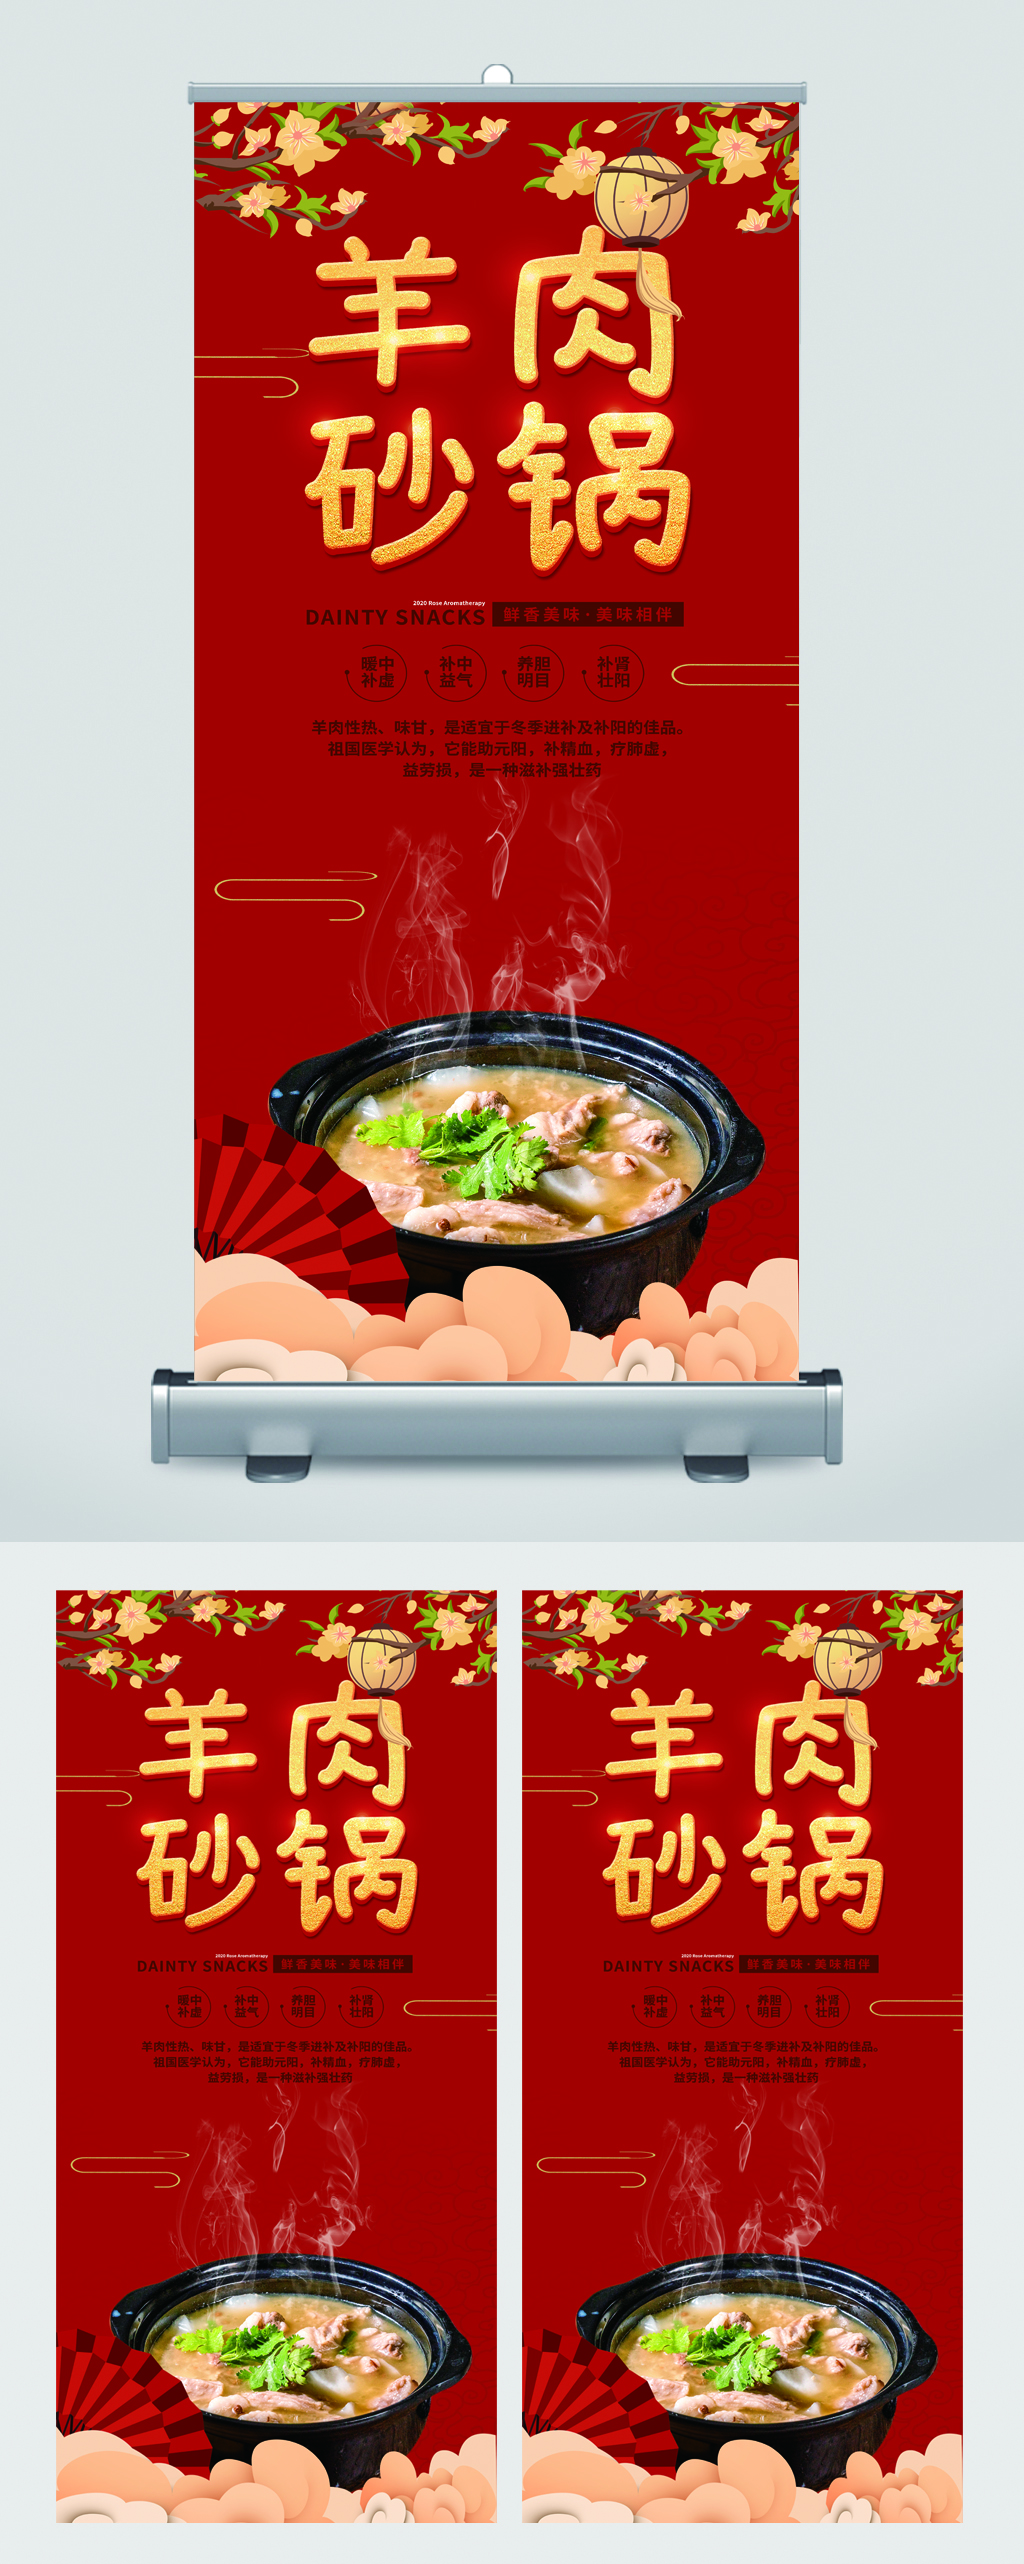 砂锅羊肉广告图片高清图片